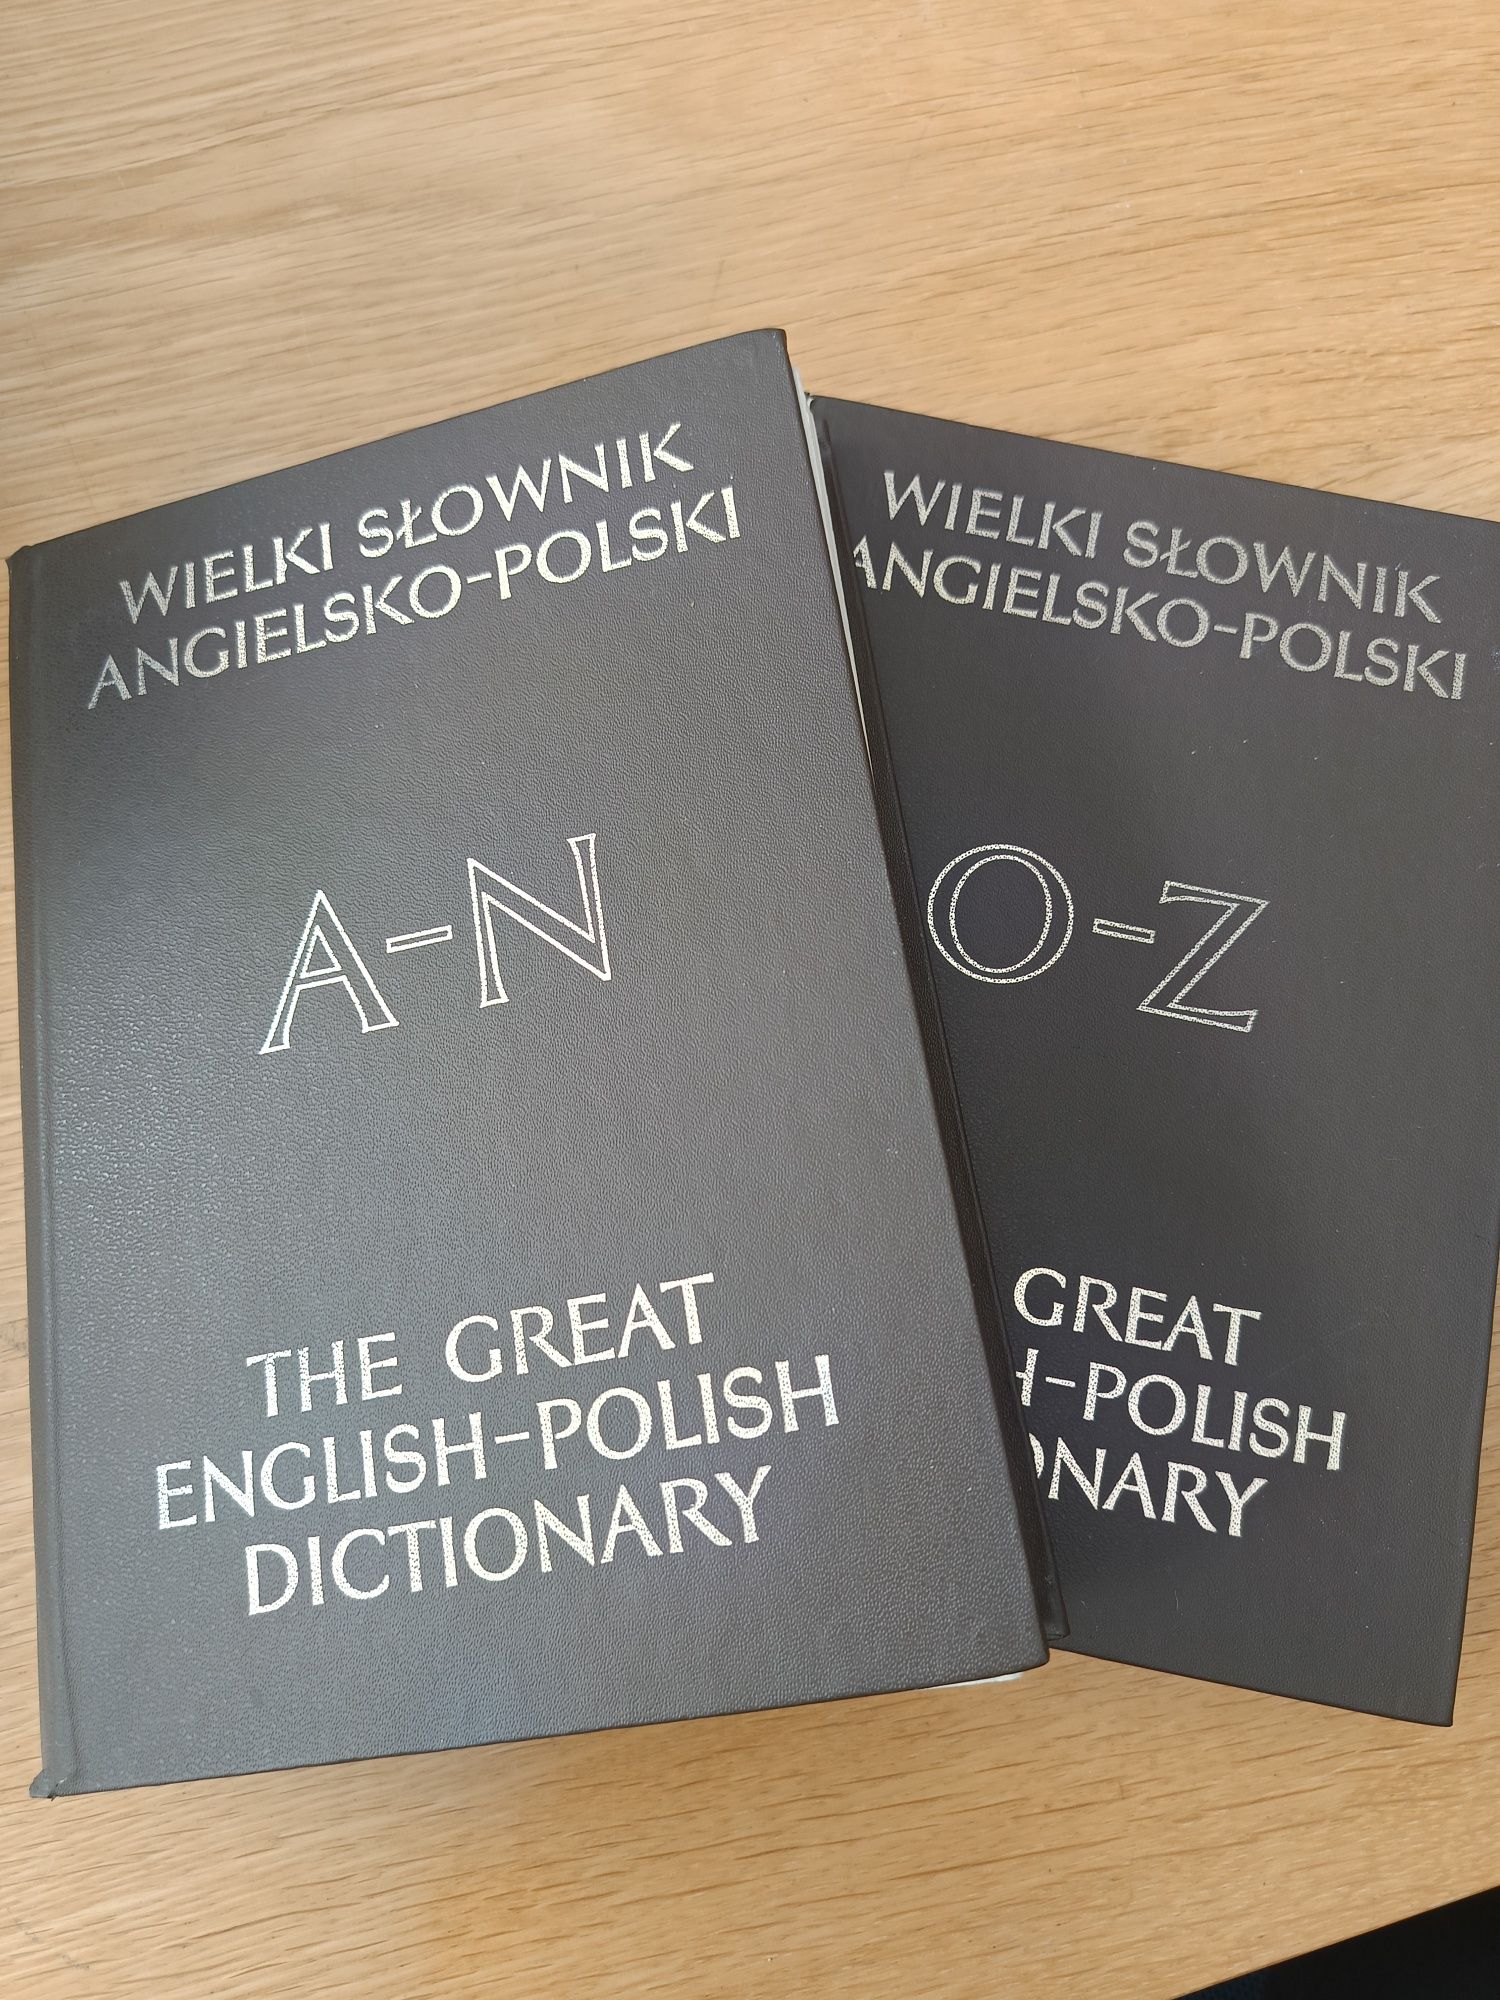 Wielki Słownik angielsko-polski -2 tomy